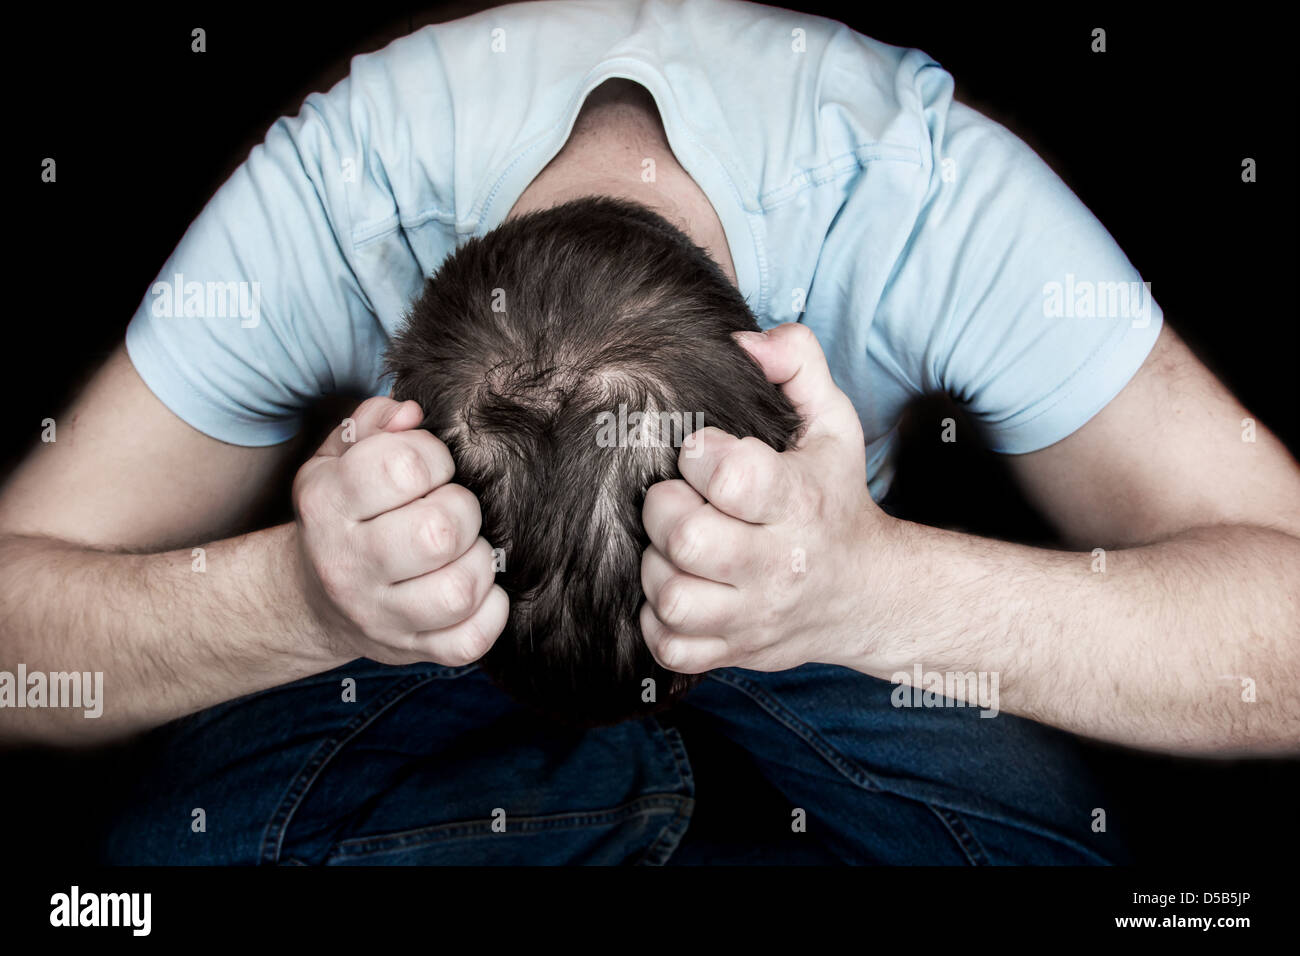 Mann hielt seinen Kopf in seine Hände auf Boden sitzend auf schwarzem Hintergrund. Verzweiflung, Depression, Hoffnungslosigkeit Konzept. Stockfoto